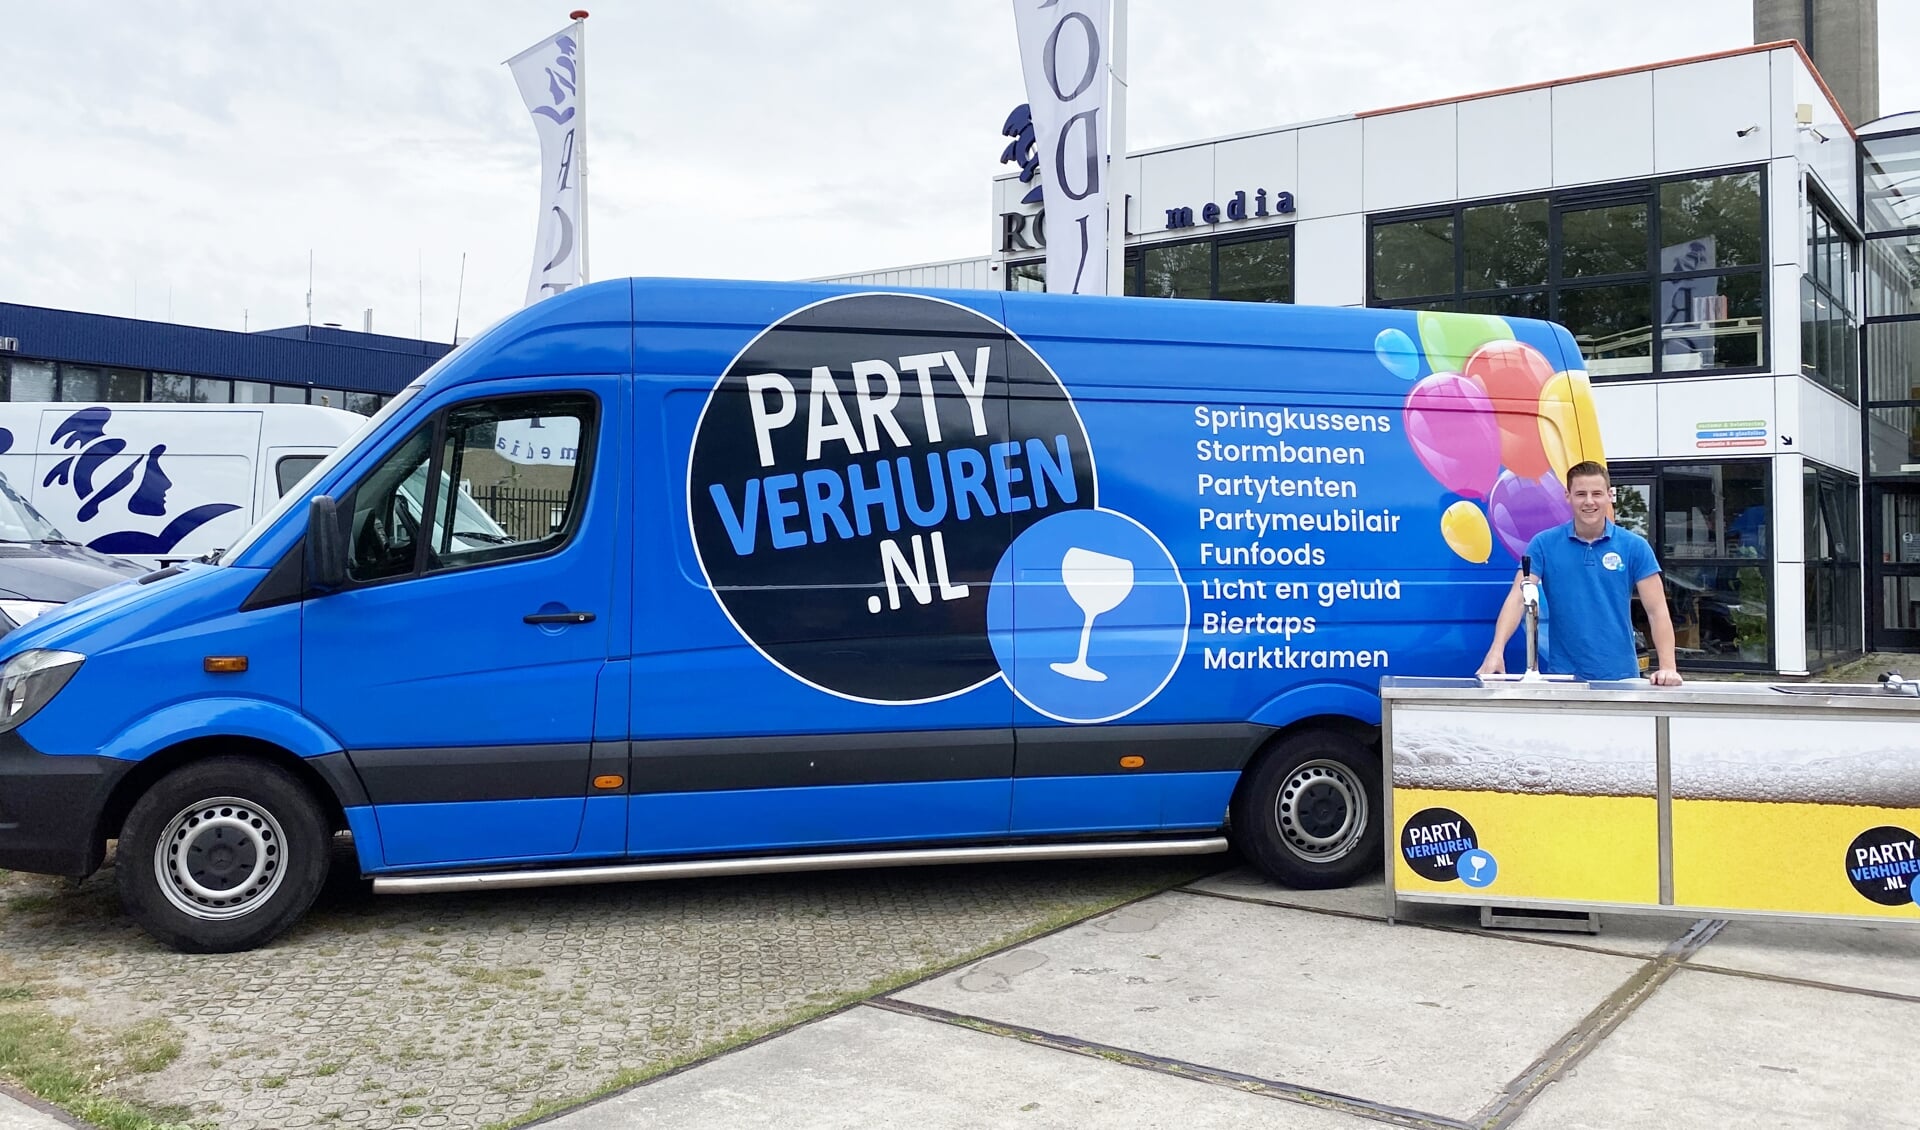 De bus van Partyverhuren.nl is een echte eyecatcher